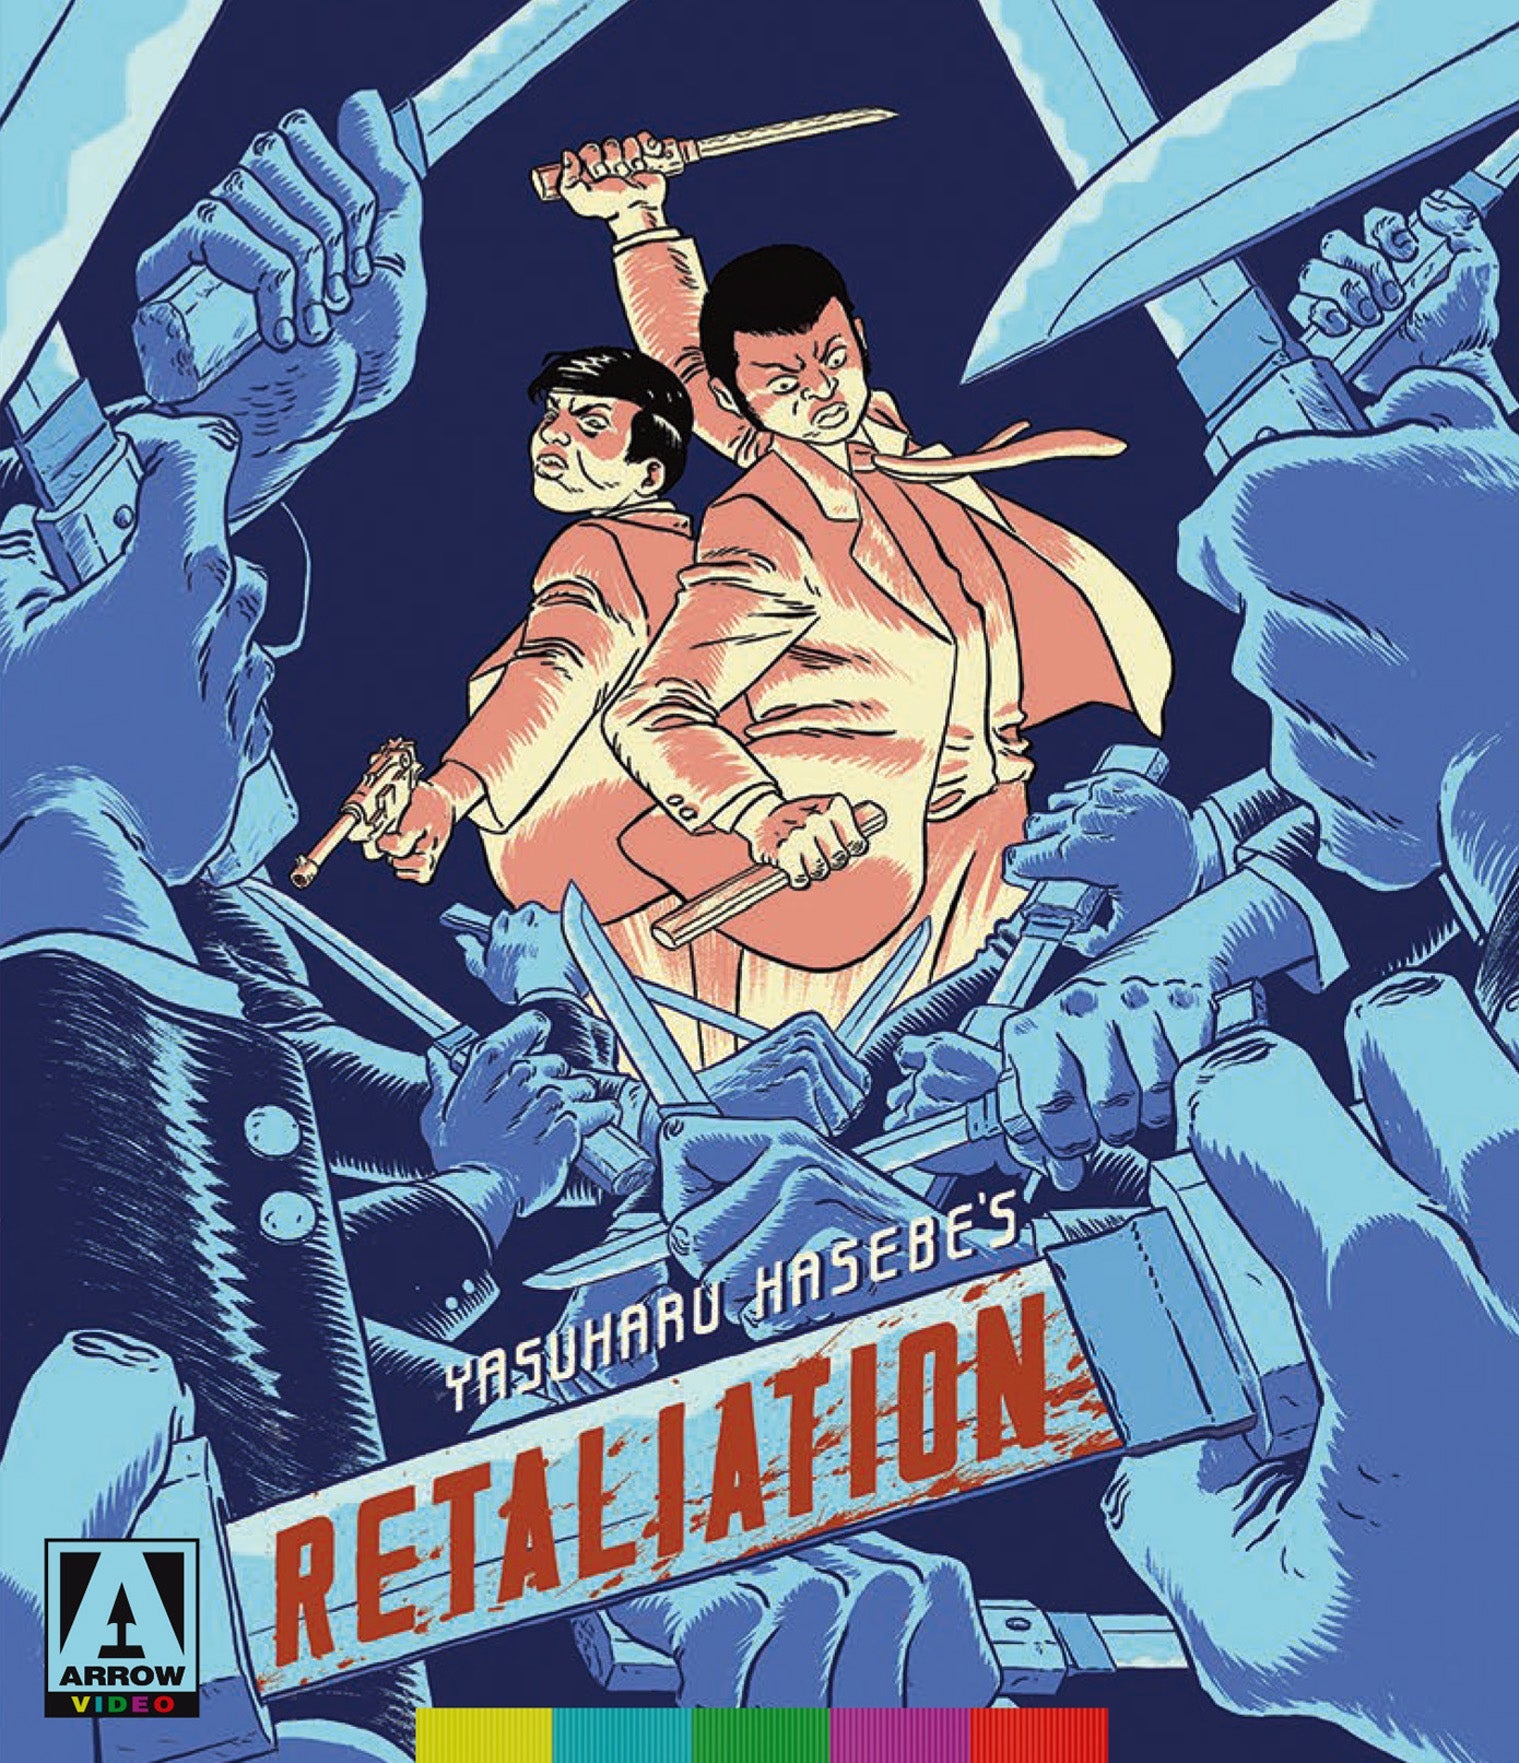 Retaliation (Limited Edition) Blu-Ray/dvd Blu-Ray